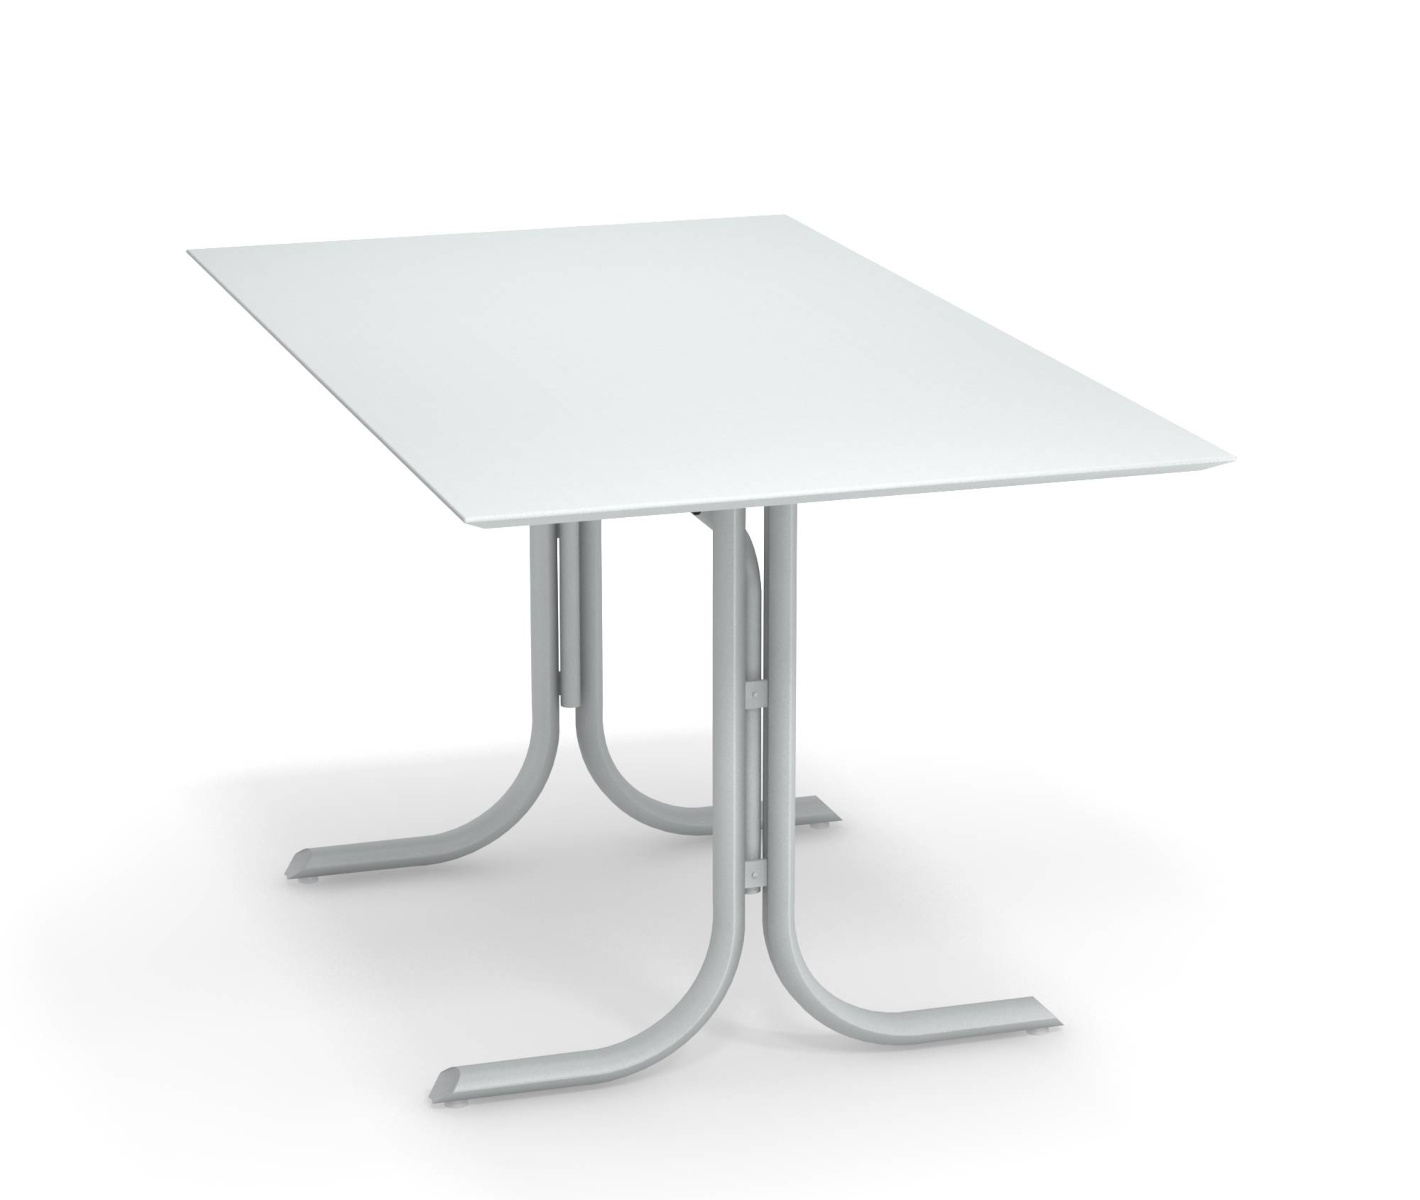 Table System mit abnehmbarer Platte und flacher Tischkante, 140 x 80 cm, militärgrün